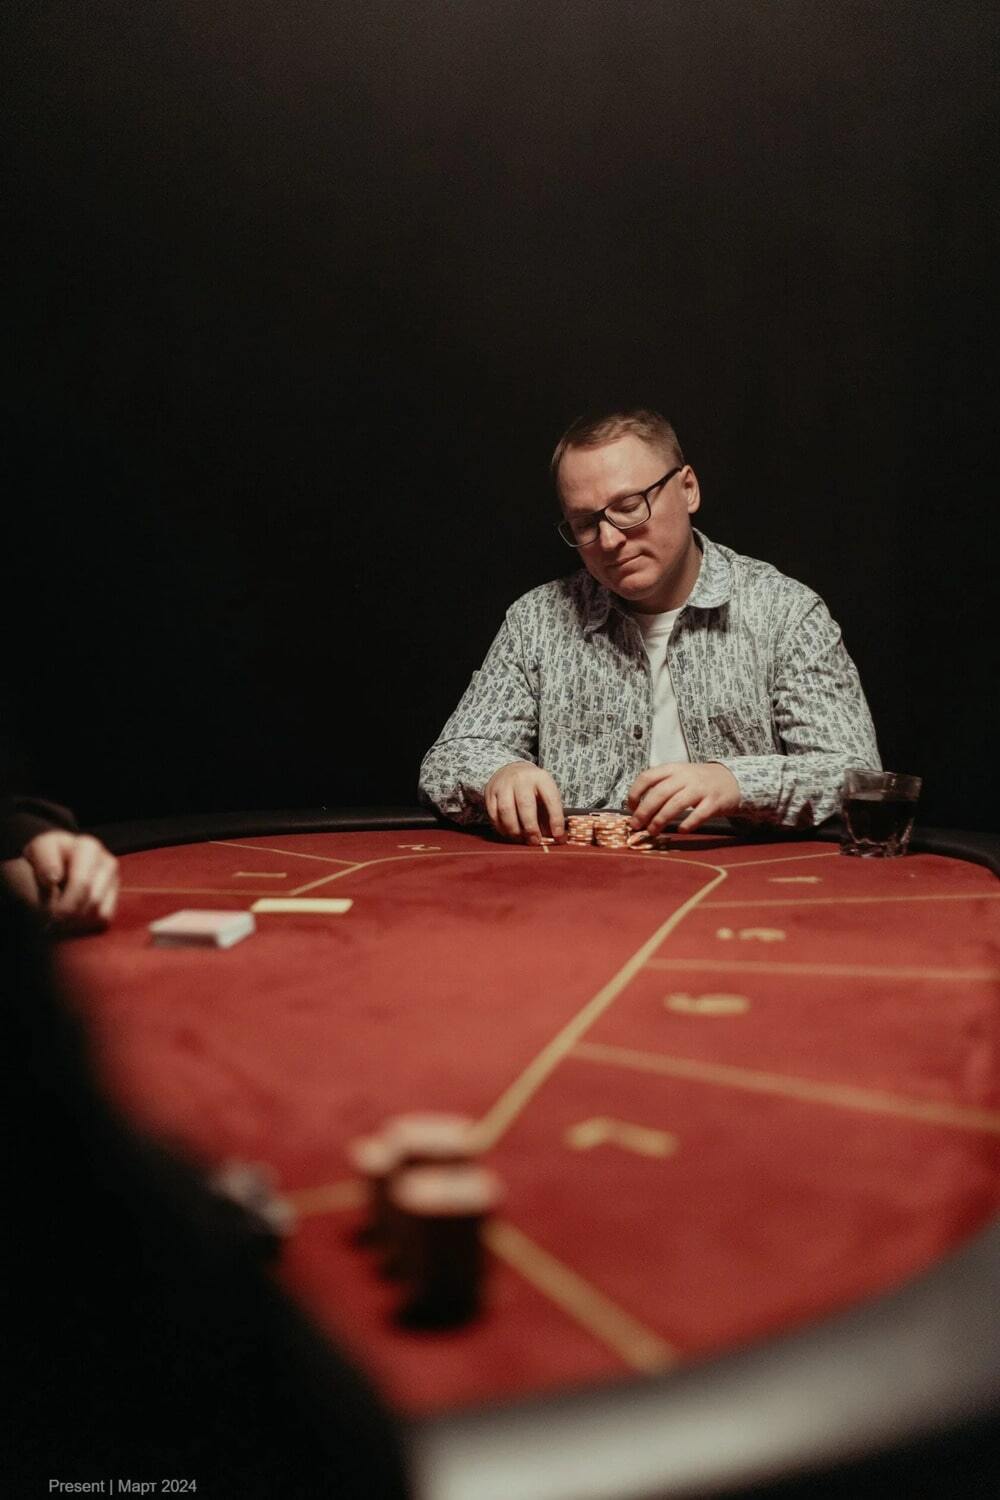 Стол для покера на прокат